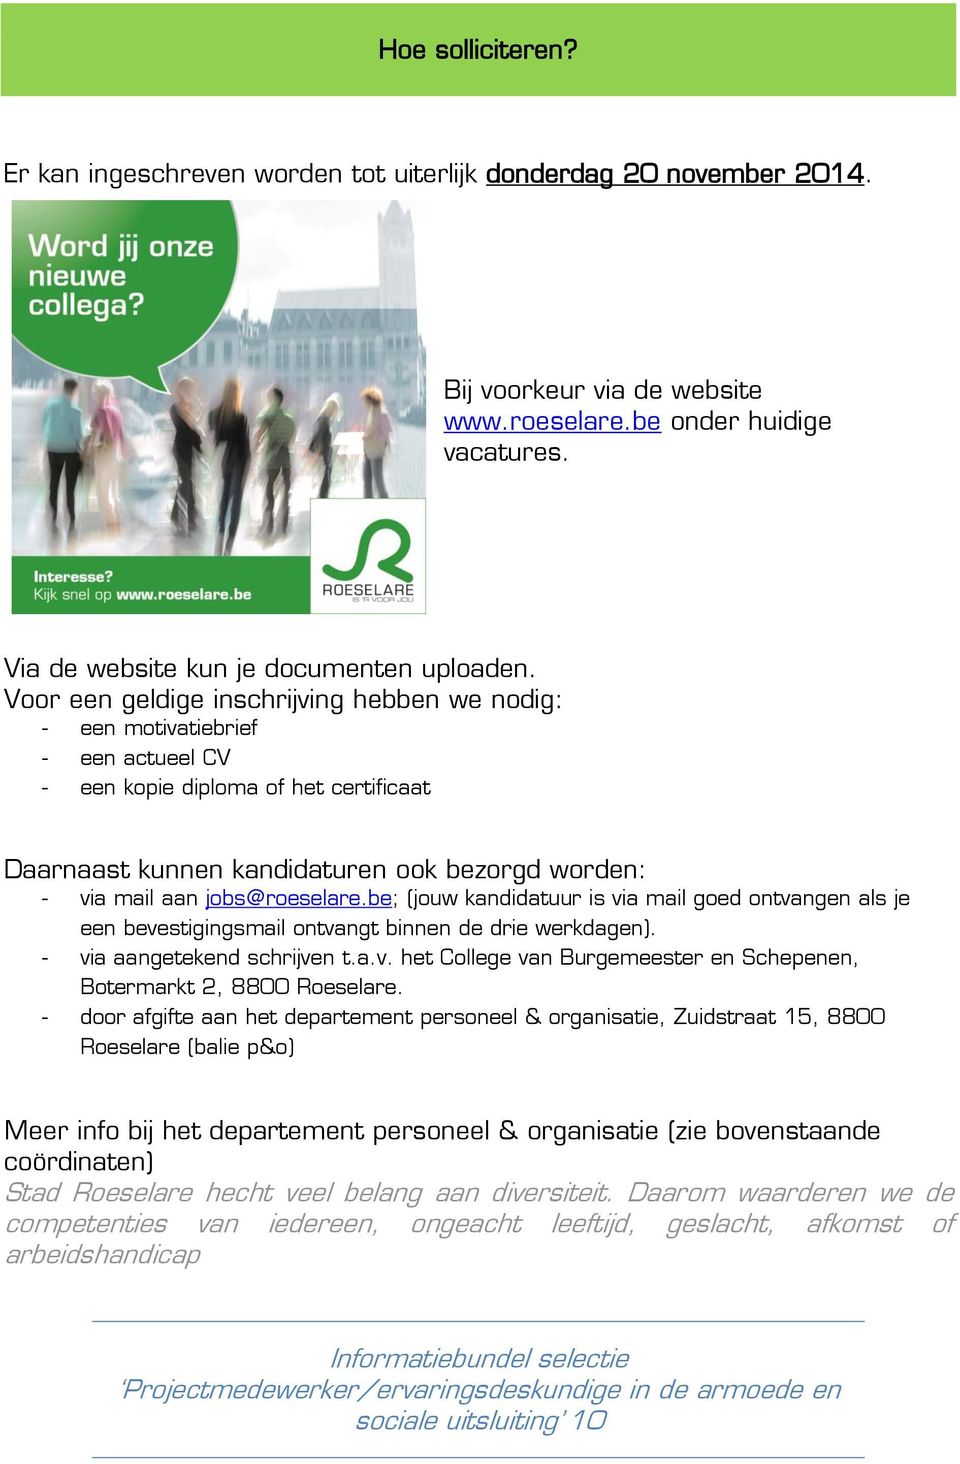 jobs@roeselare.be; (jouw kandidatuur is via mail goed ontvangen als je een bevestigingsmail ontvangt binnen de drie werkdagen). - via aangetekend schrijven t.a.v. het College van Burgemeester en Schepenen, Botermarkt 2, 8800 Roeselare.